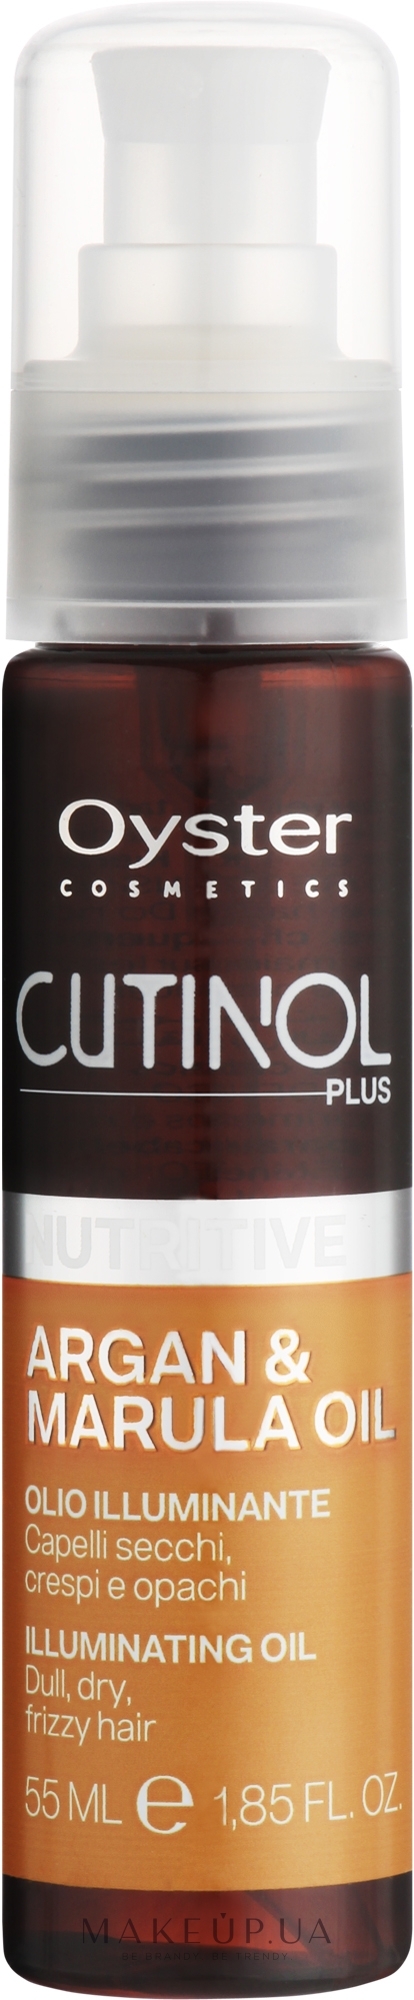 Спрей-масло для питания волос - Oyster Cosmetics Cutinol Plus Nutritive Argan & Marula Oil Illuminating Oil Spray — фото 55ml